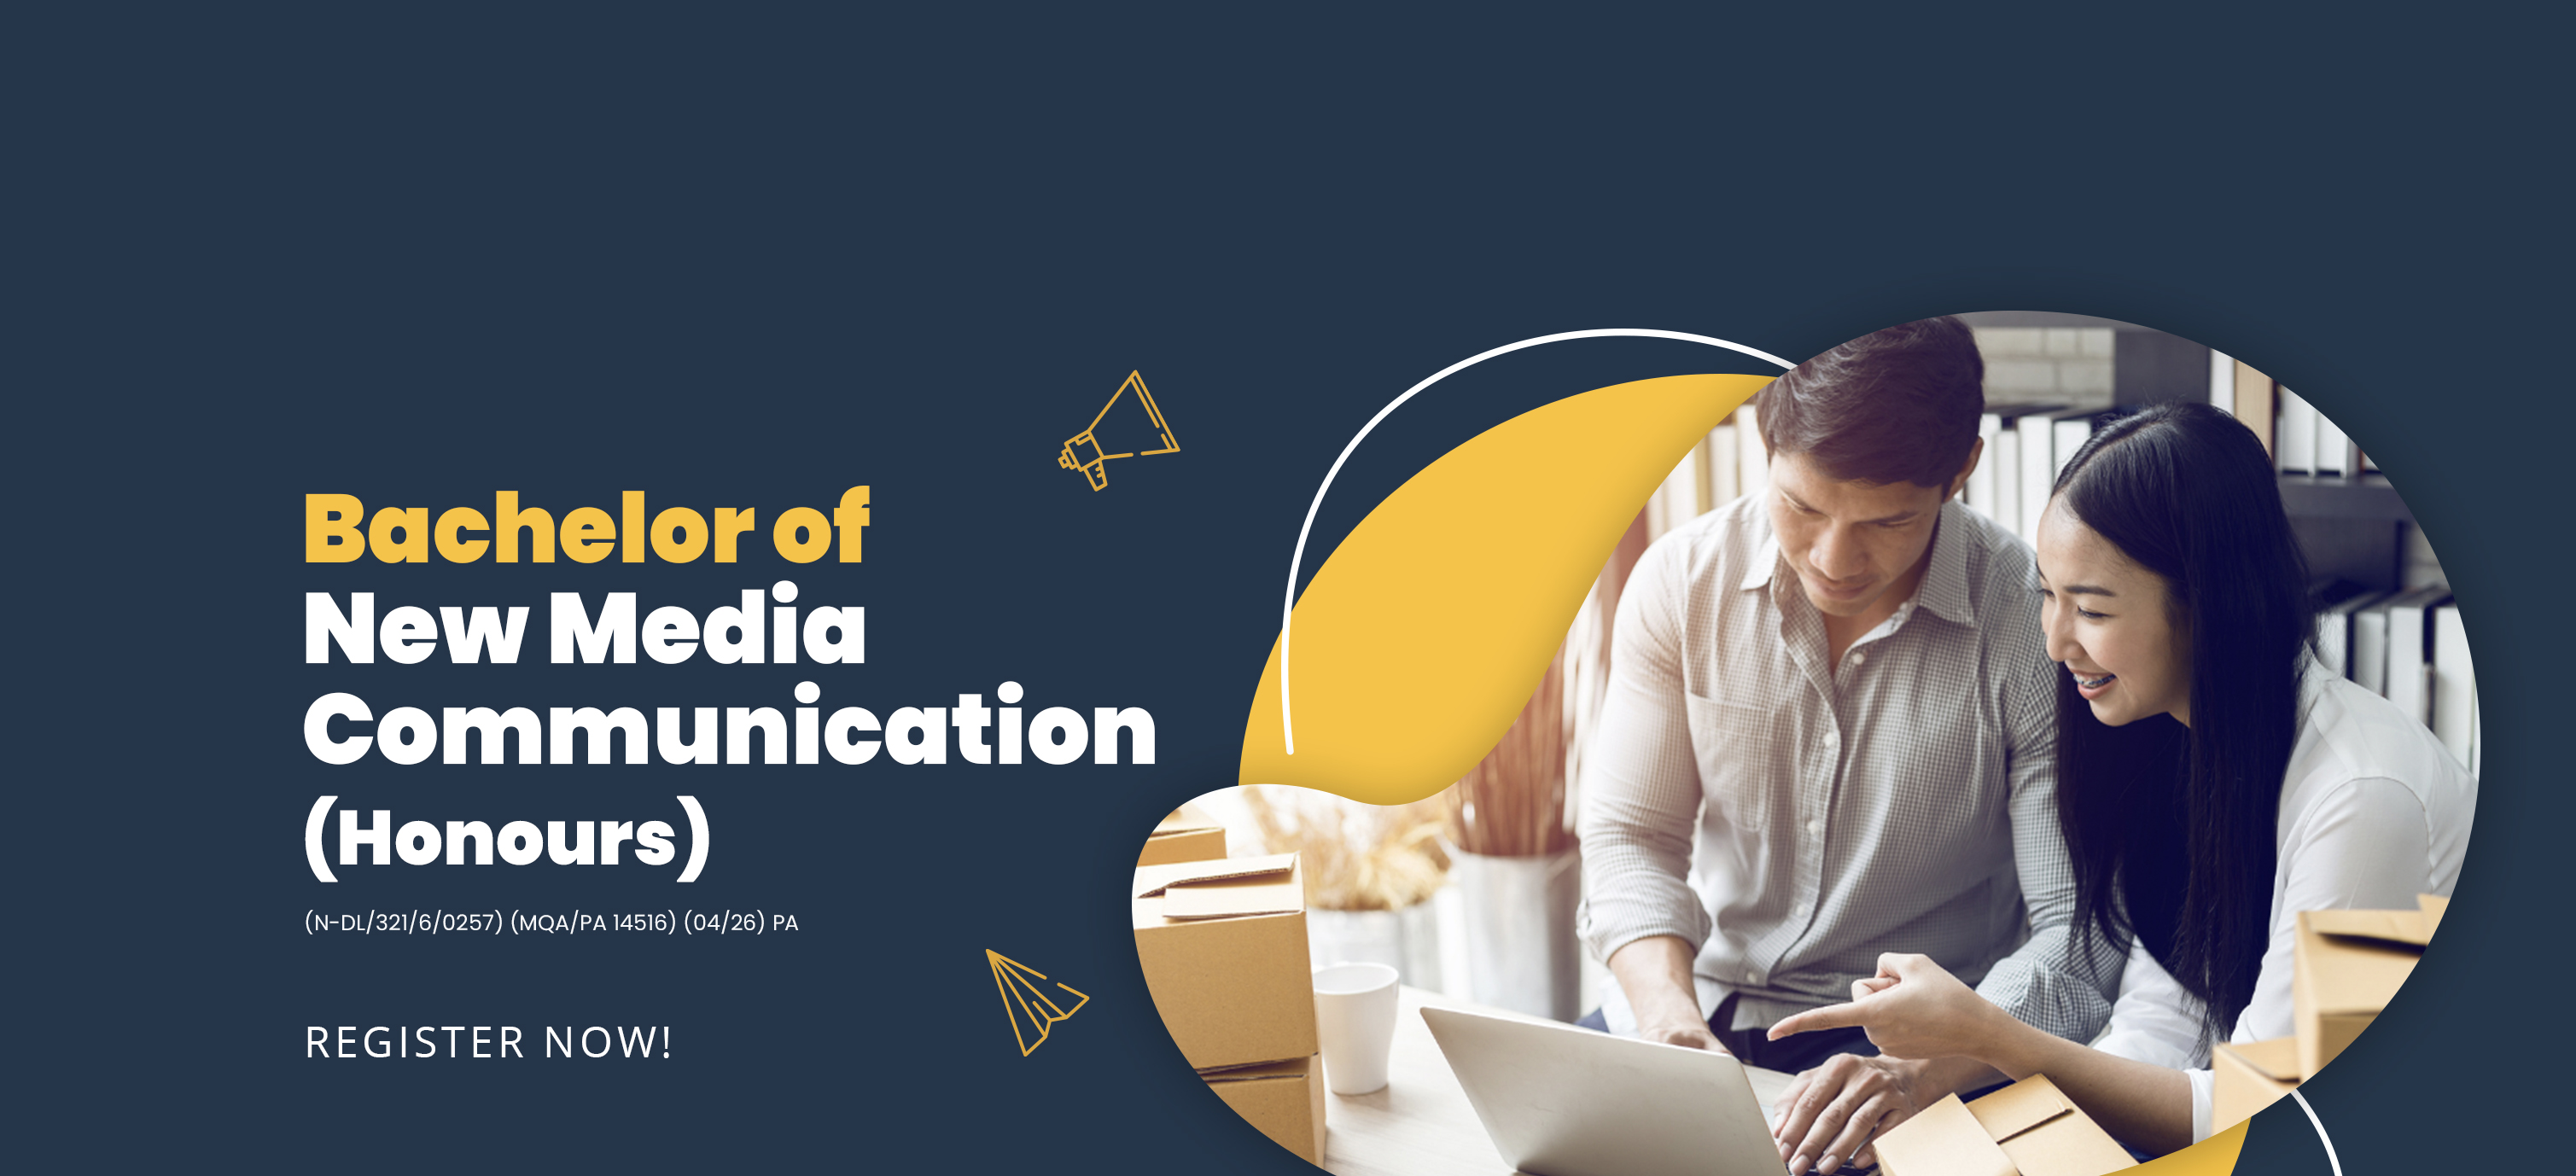 Bachelor of New Media Communication (Honours)